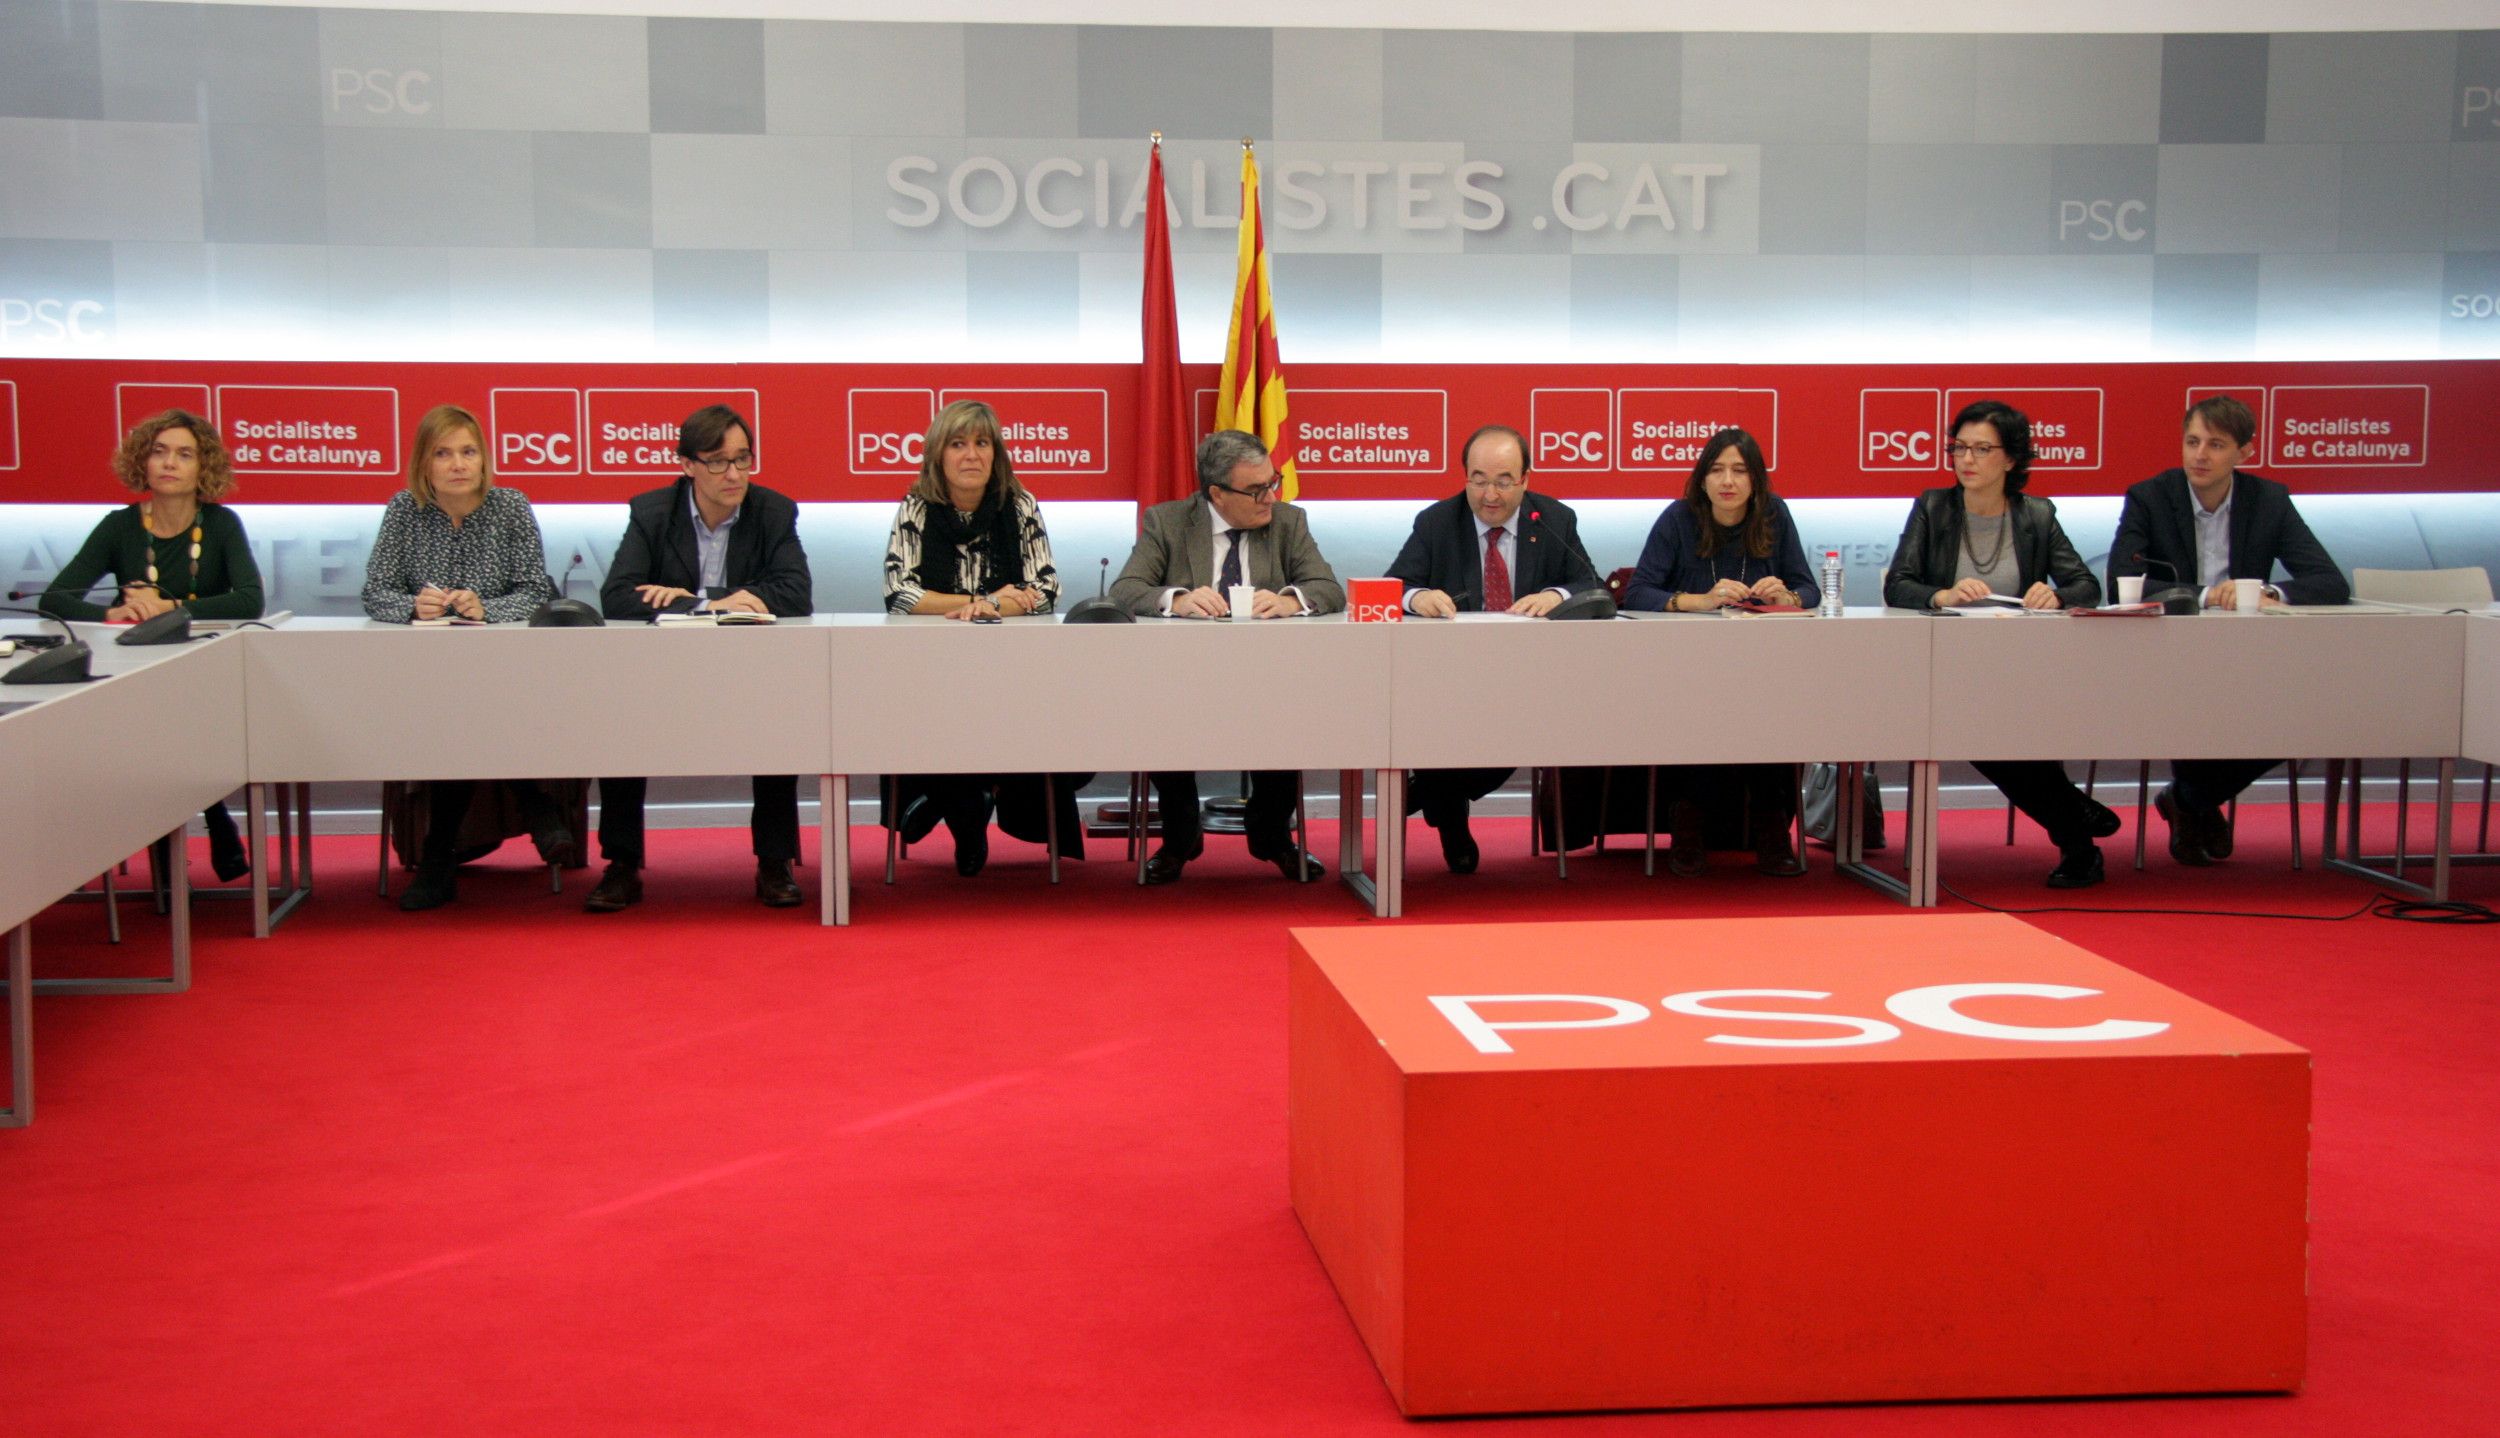 La gestora del PSOE y el PSC se reunirán el viernes en Madrid